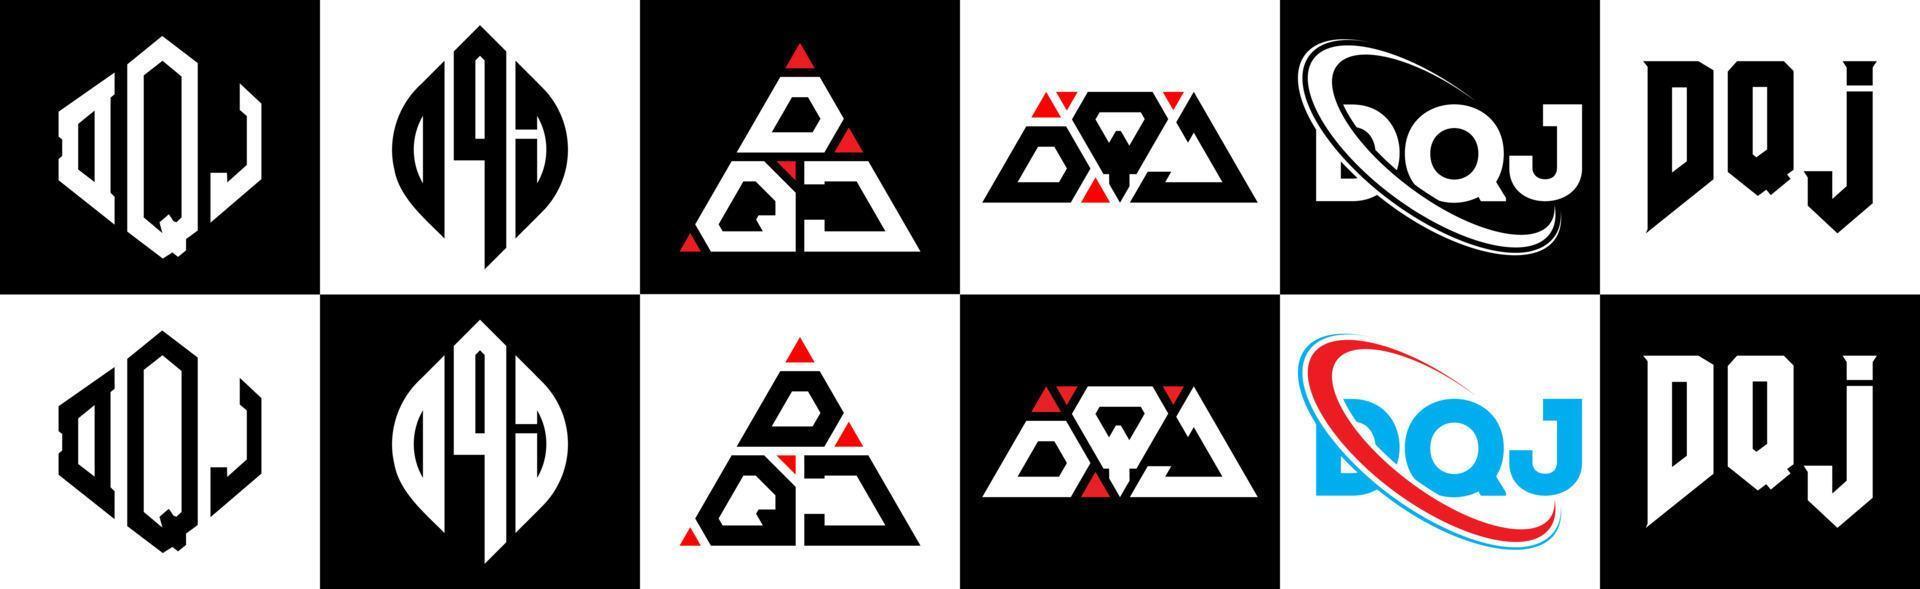 dqj brief logo ontwerp in zes stijl. dqj veelhoek, cirkel, driehoek, zeshoek, vlak en gemakkelijk stijl met zwart en wit kleur variatie brief logo reeks in een tekengebied. dqj minimalistische en klassiek logo vector